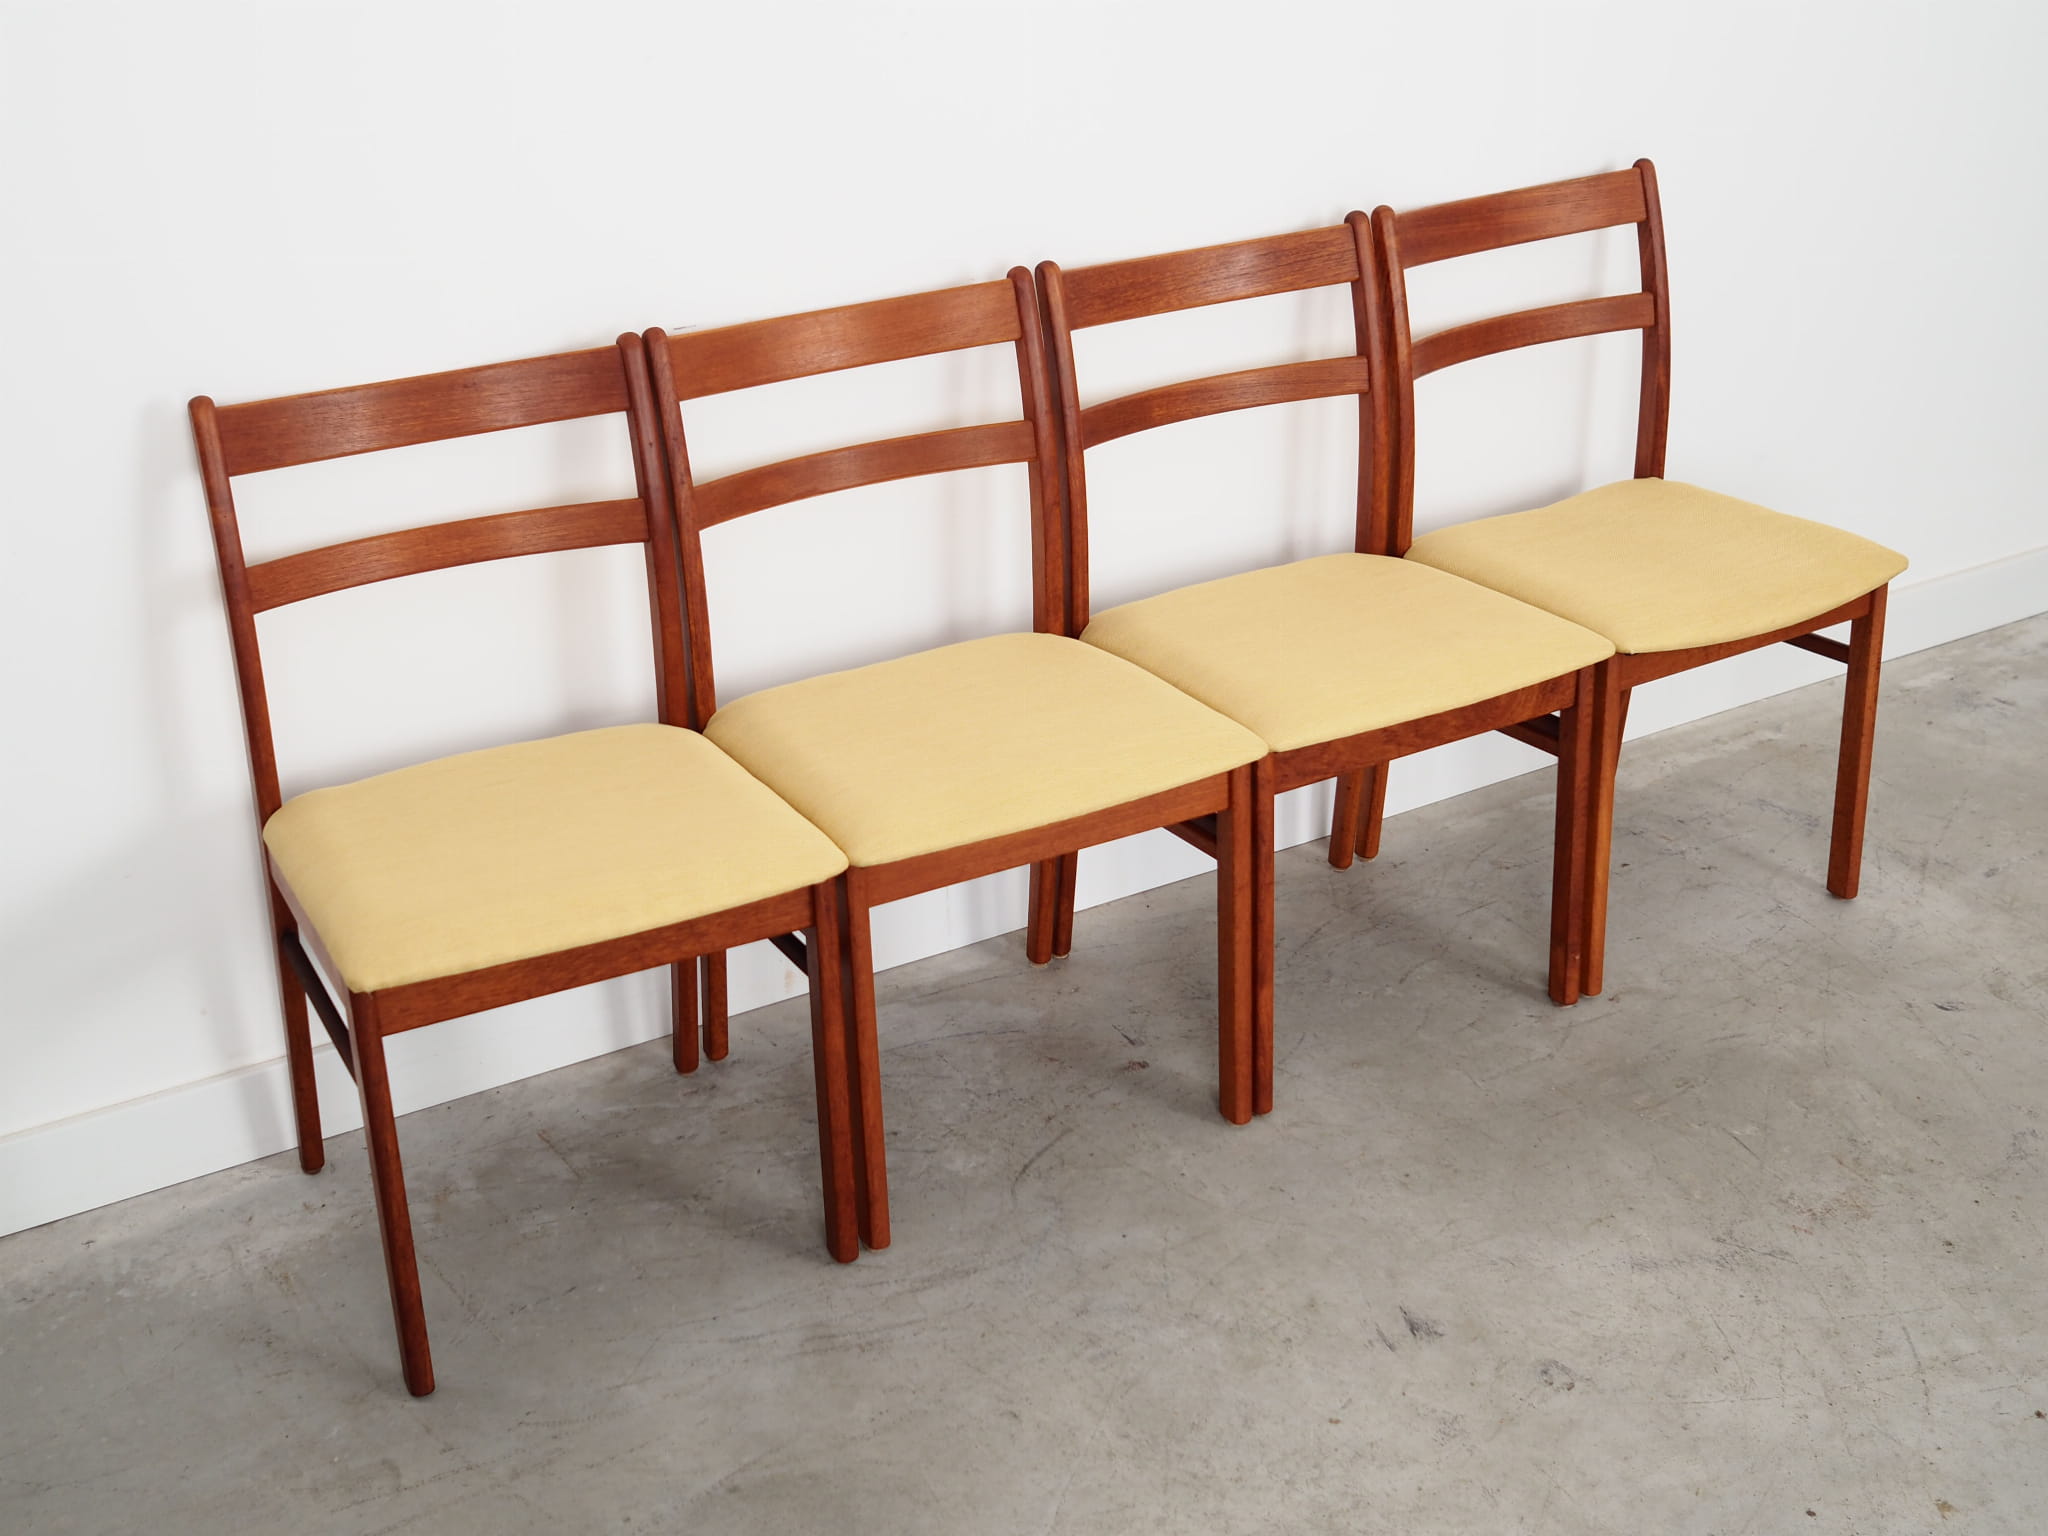 4x Vintage Stuhl Teakholz Textil Beige 1970er Jahre